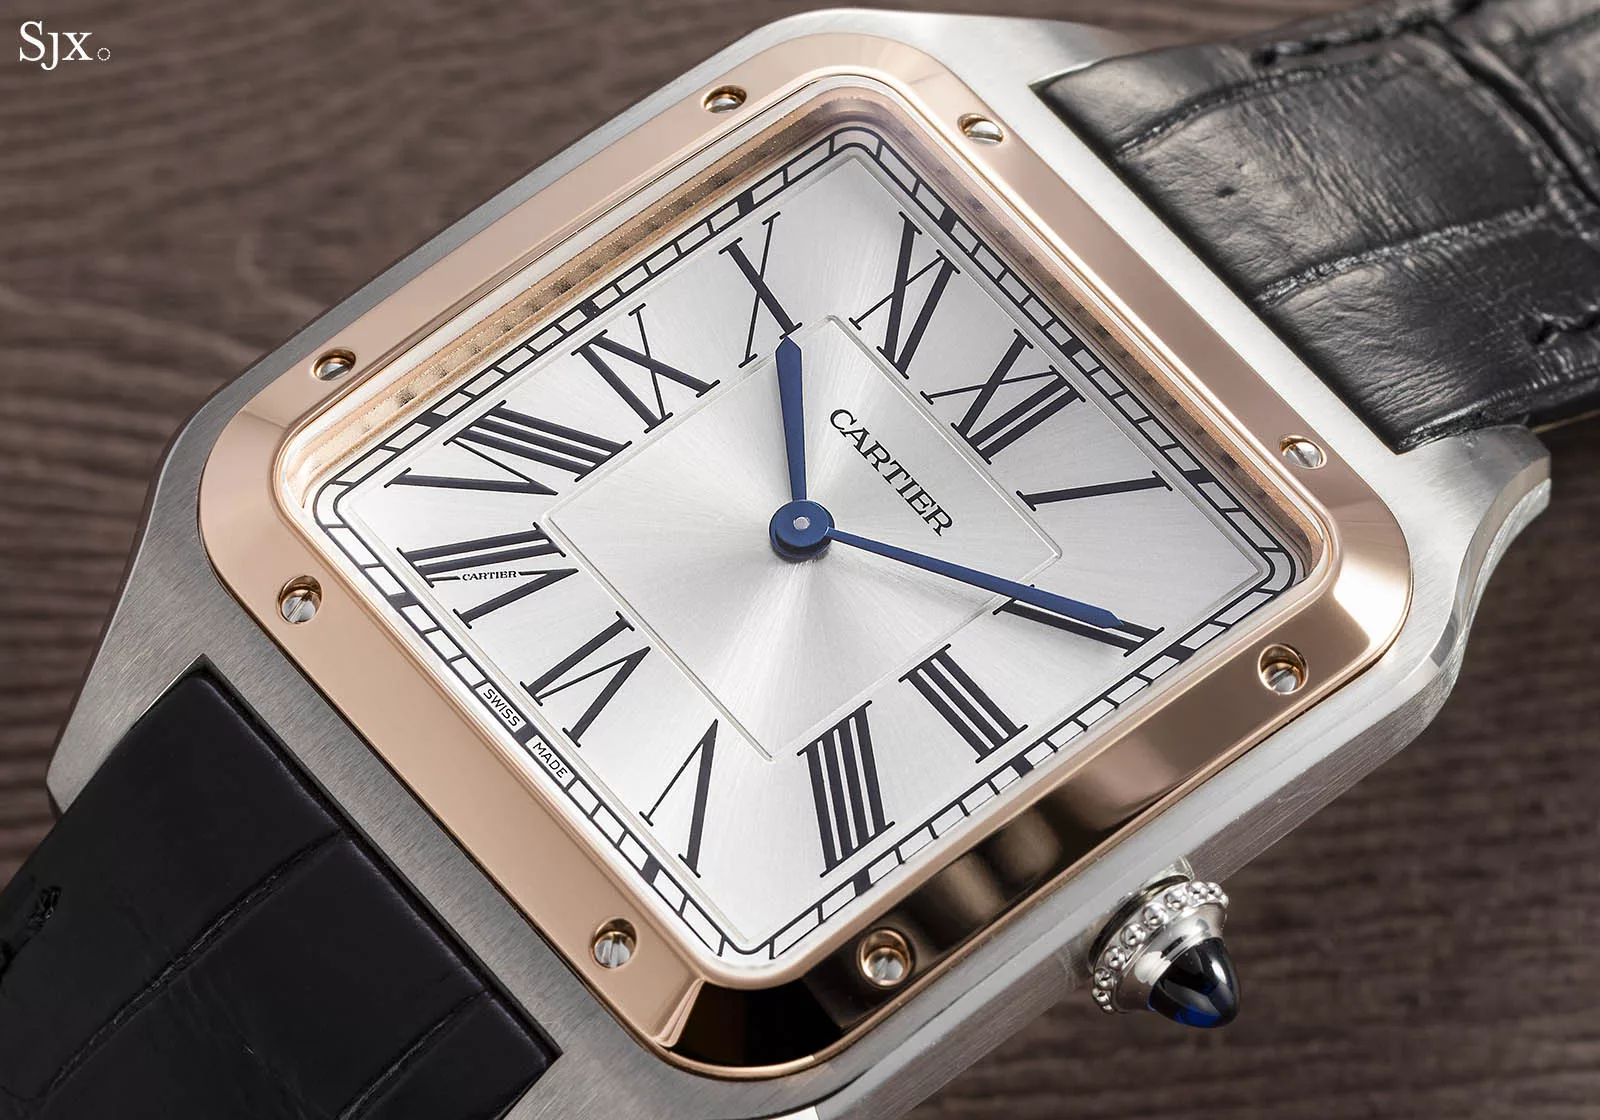 Cartier launches new mechanical Cartier Santos-Dumont XL watch